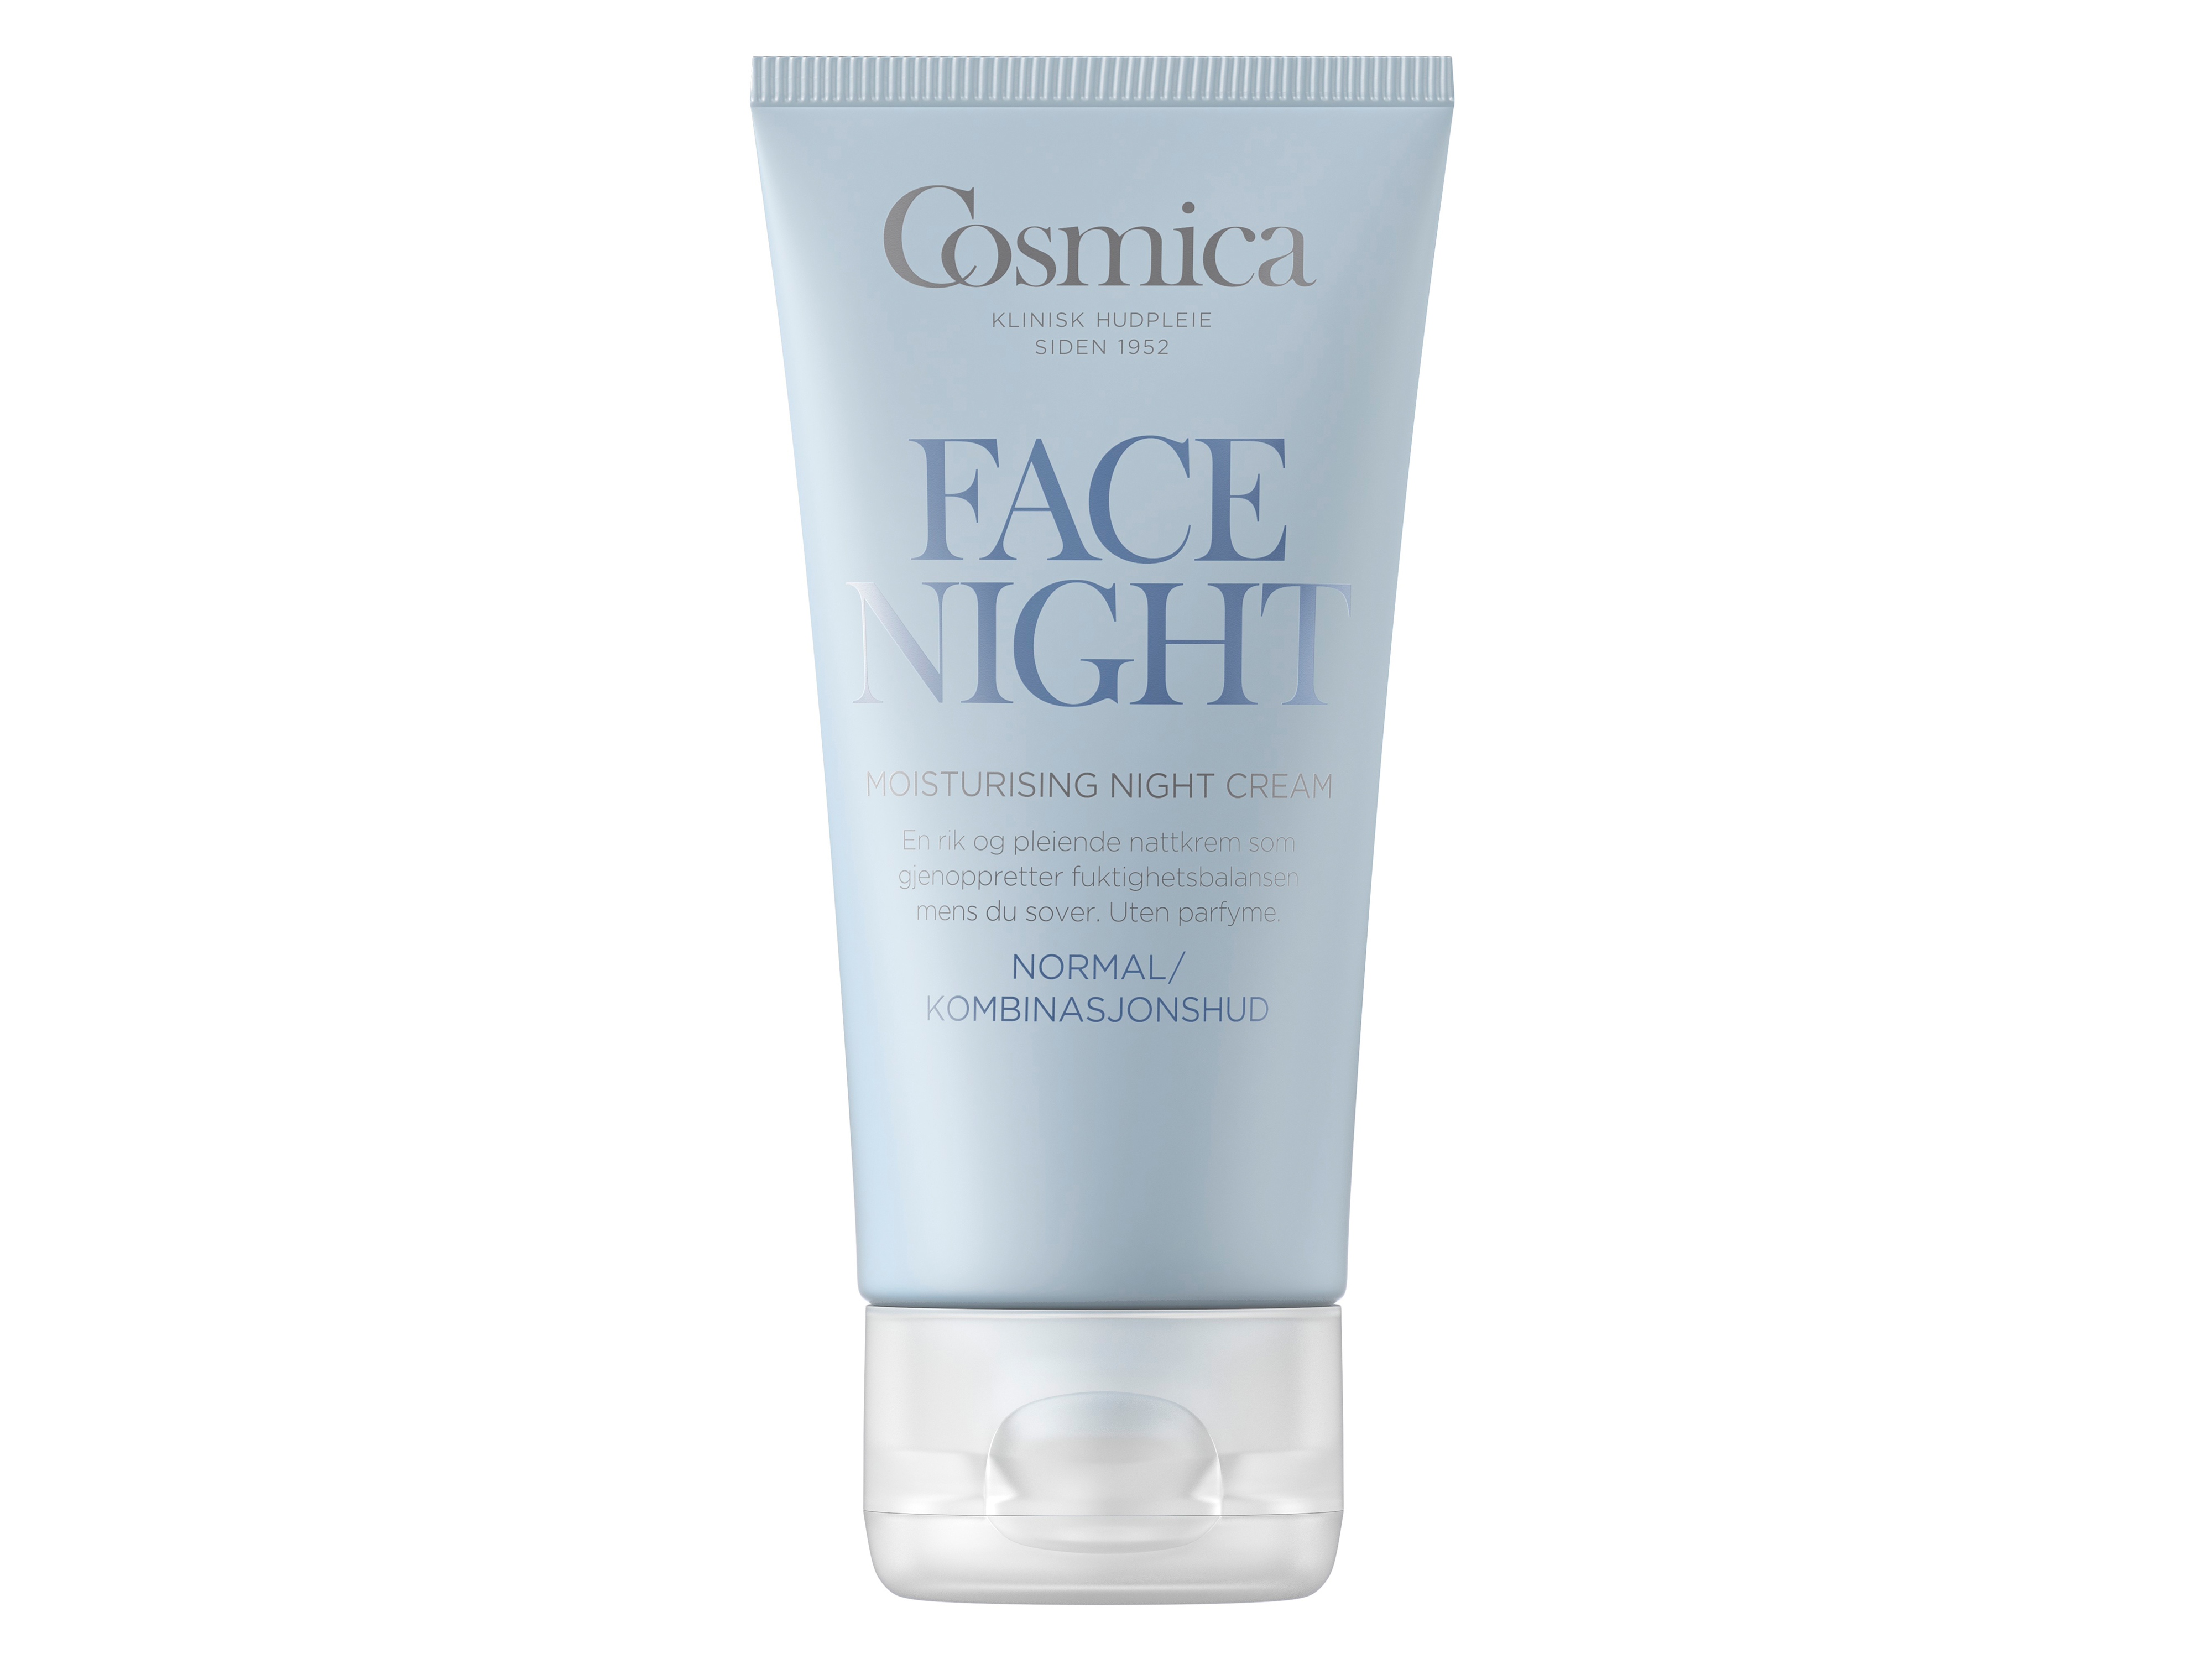 Cosmica Face Moisturising Night Cream, 50 ml